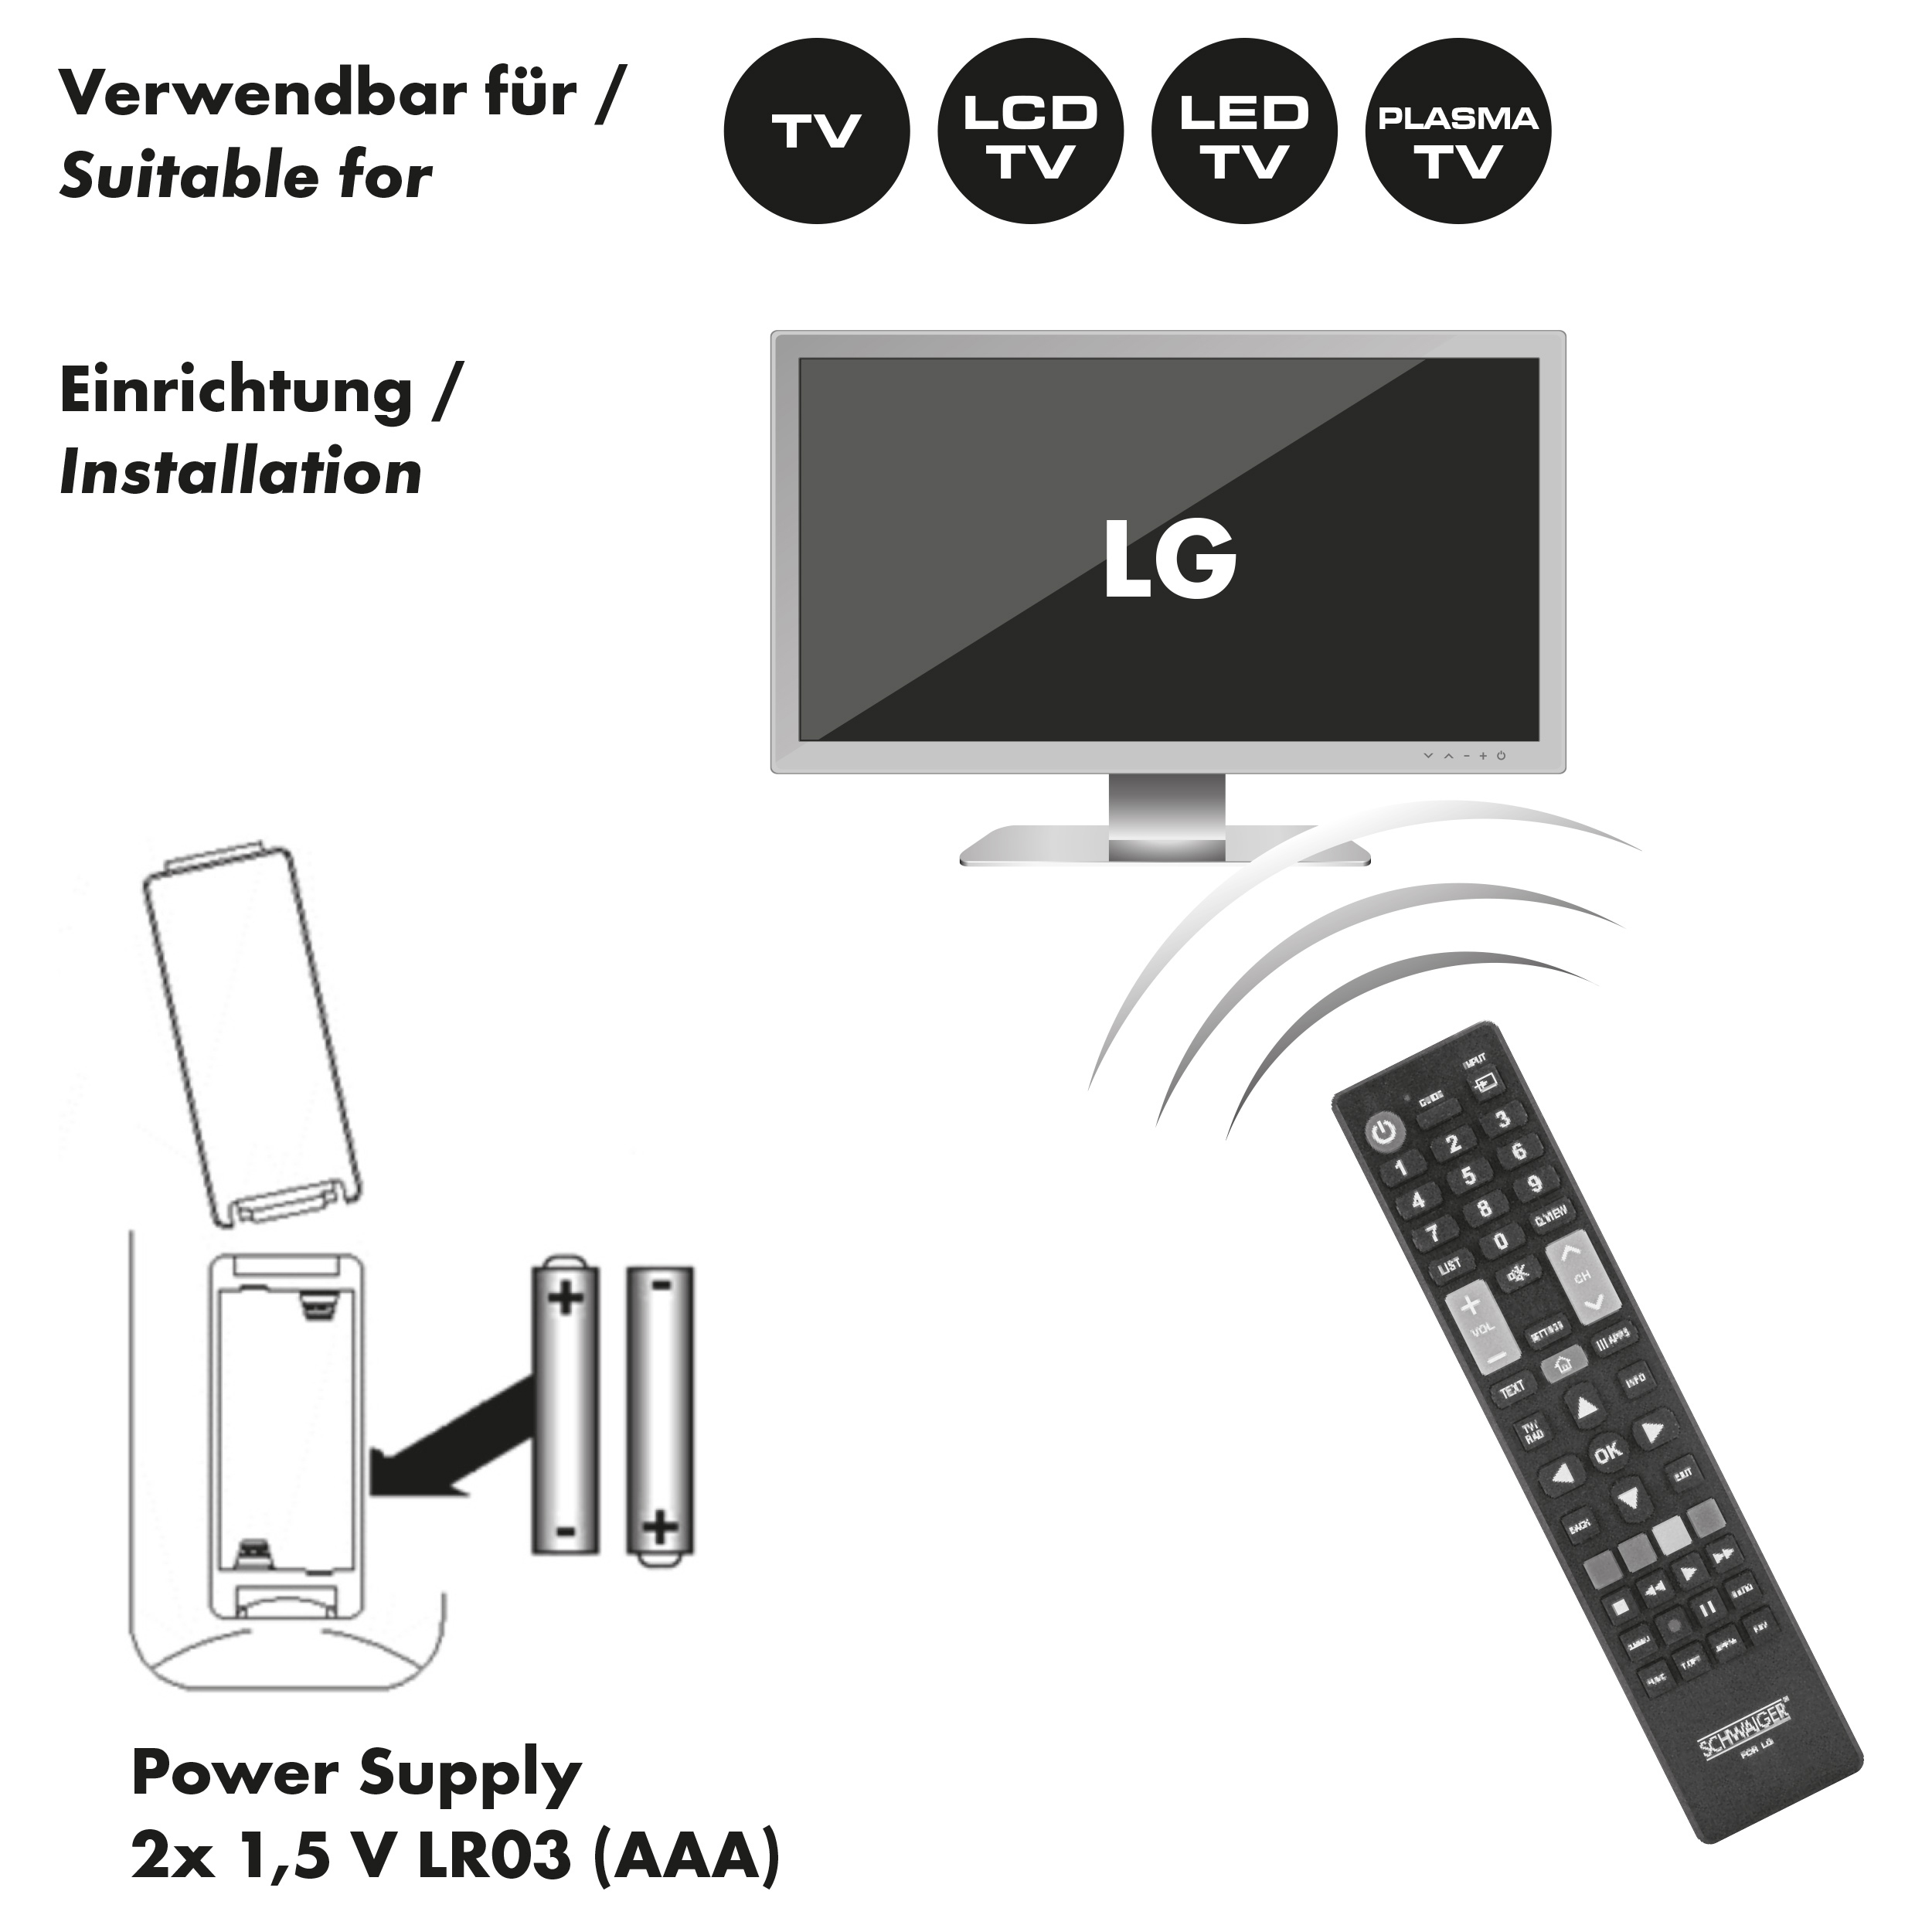 SCHWAIGER -UFB100LG 533- Ersatzfernbedienung für LG TV-Geräte